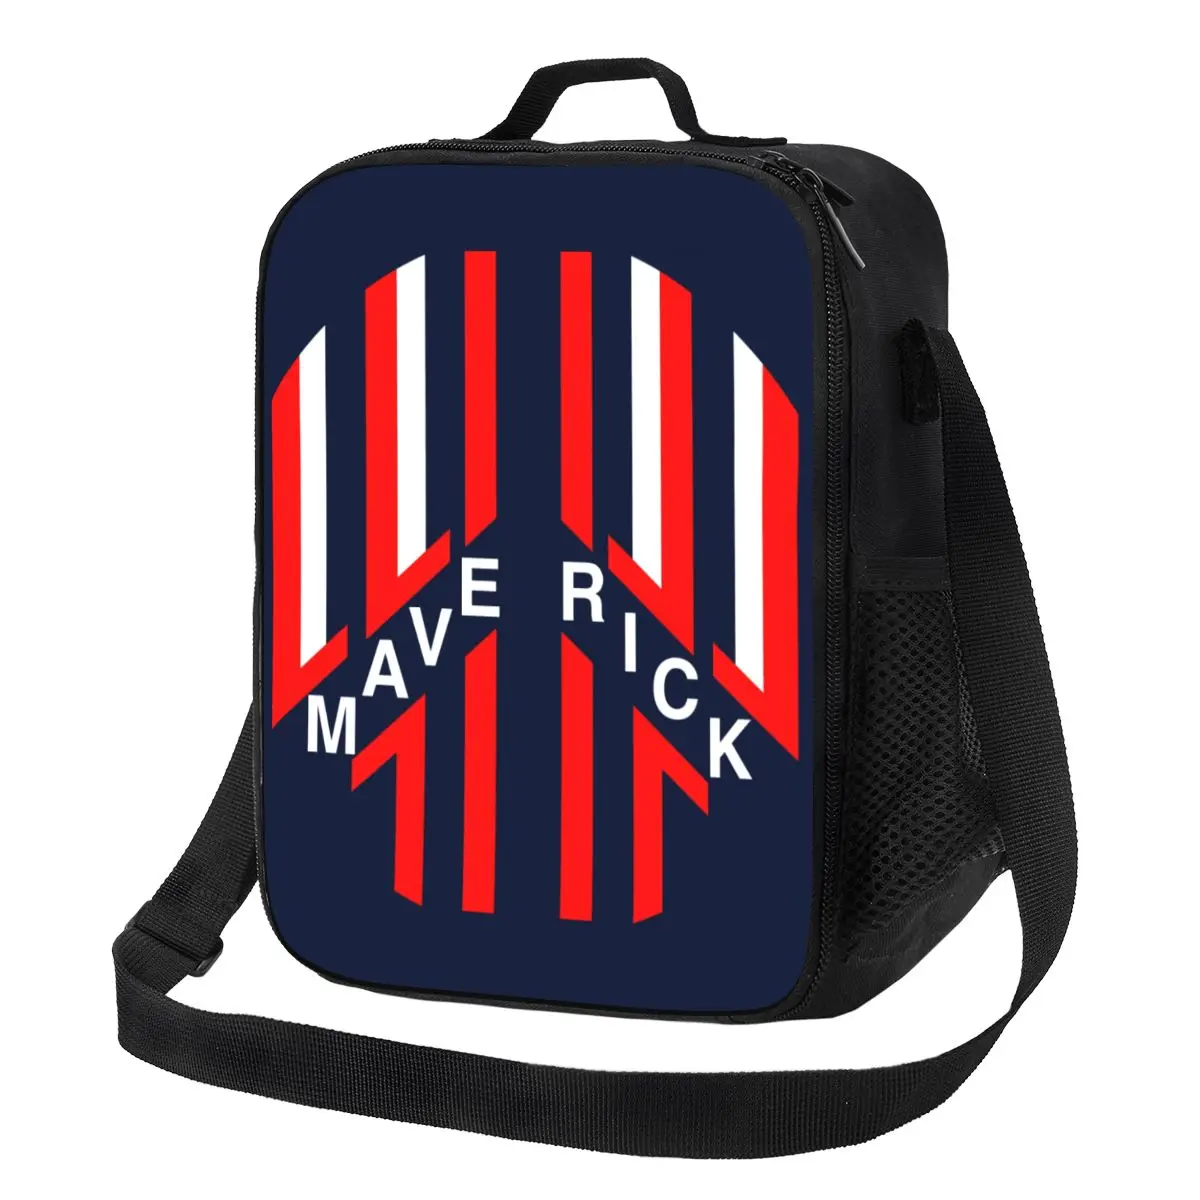 

Top Gun Maverick изолированная сумка для ланча для улицы пикника фильм водонепроницаемый термоохладитель бэнто коробка для женщин детей